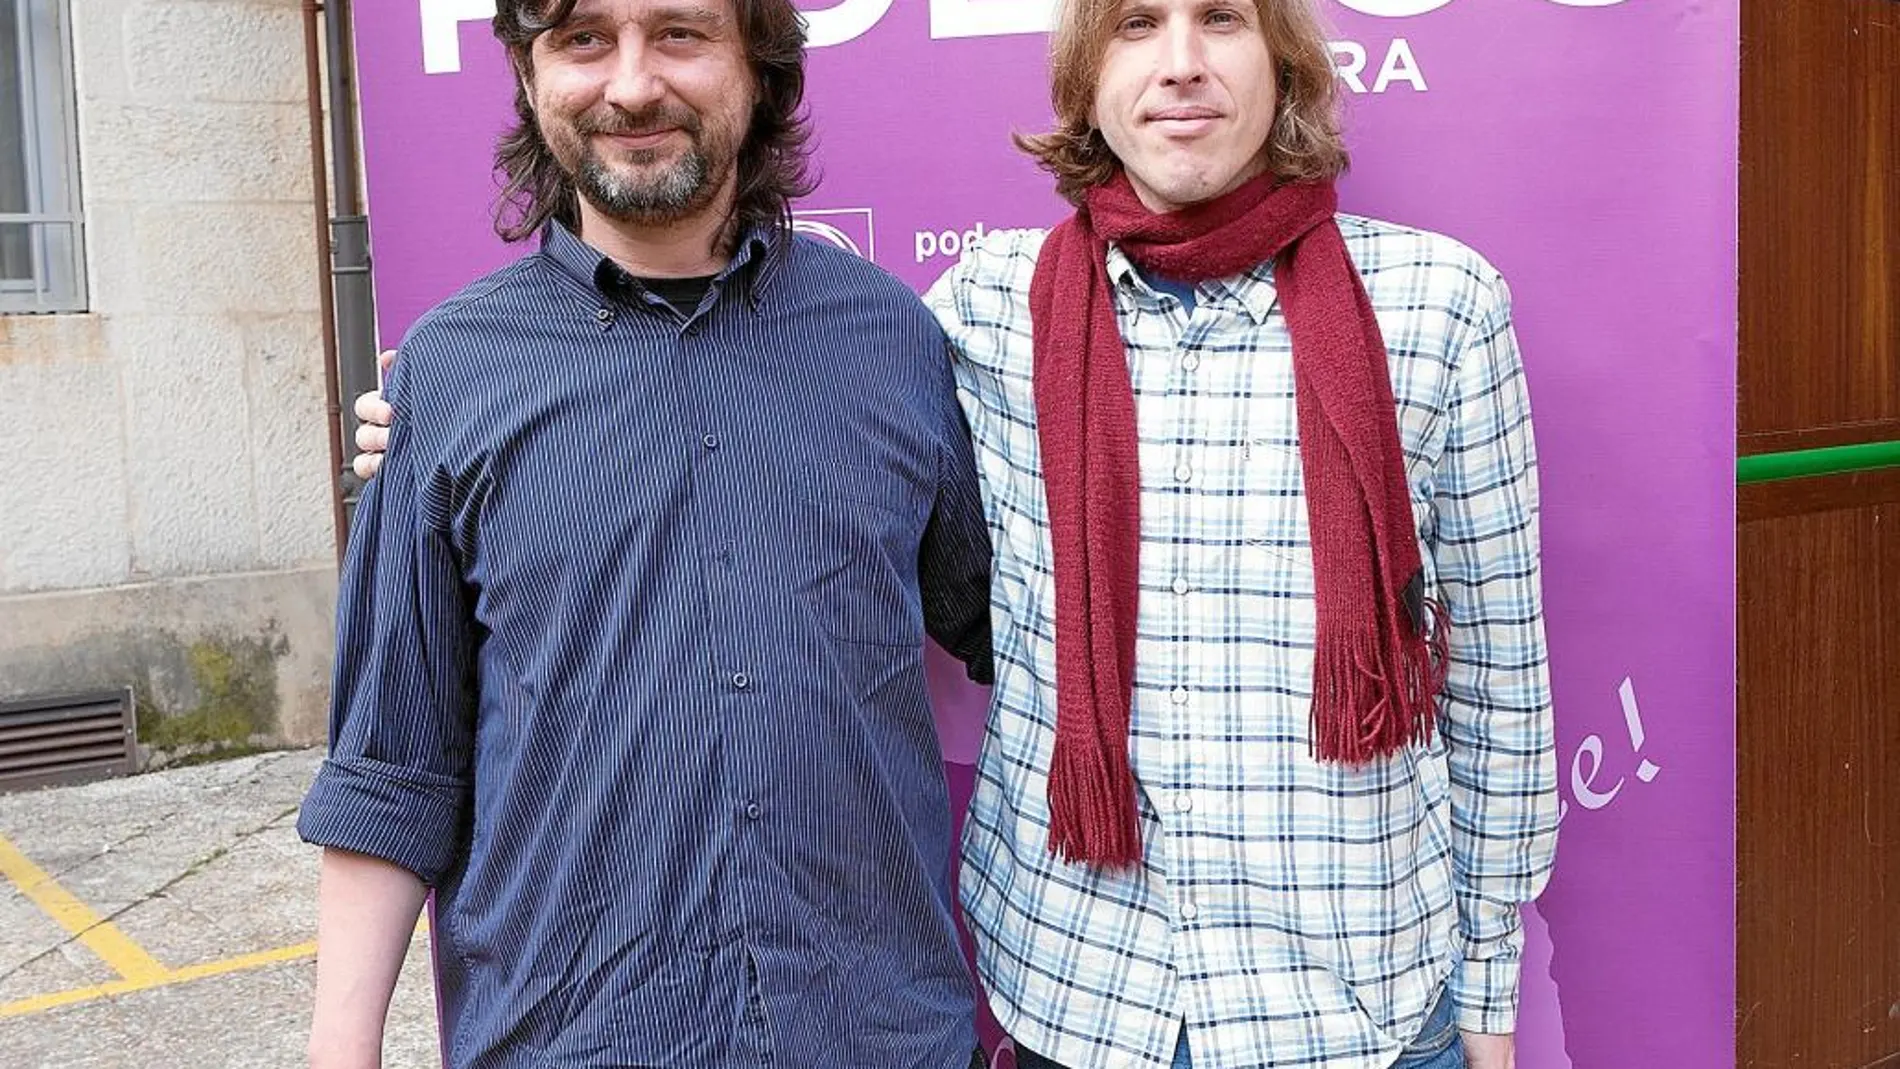 Rafael Mayoral y Pablo Fernández, candidato de Podemos a las autonómicas de Castilla y León